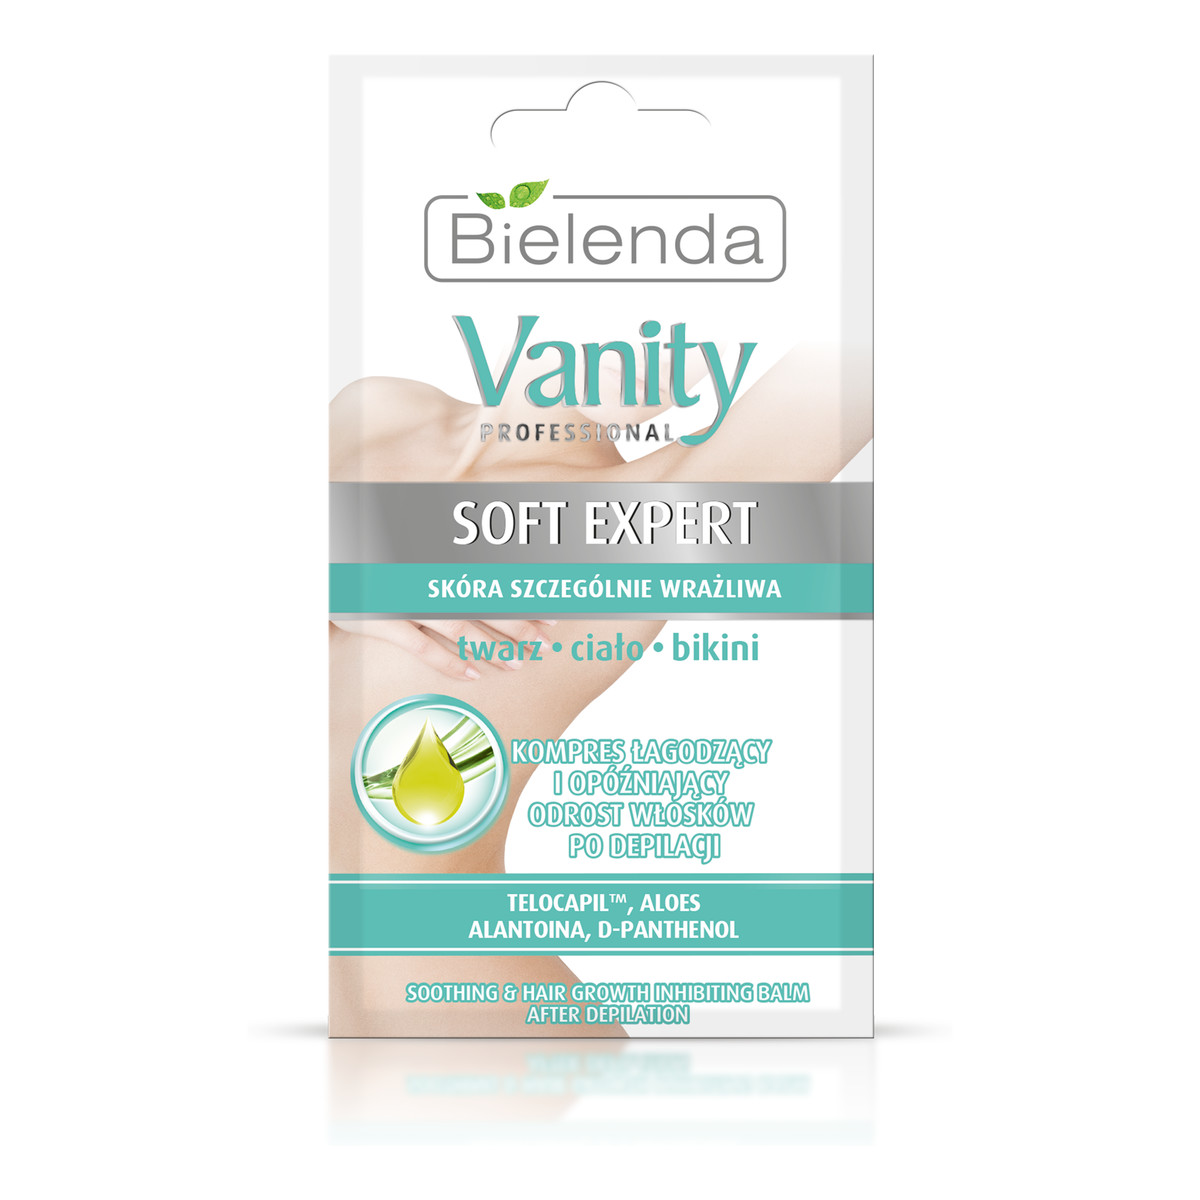 Bielenda Vanity Soft Expert Kompres Łagodzący i Opóźniający Odrost Włosków Po Depilacji -Twarz, Ciało, Bikini 10g